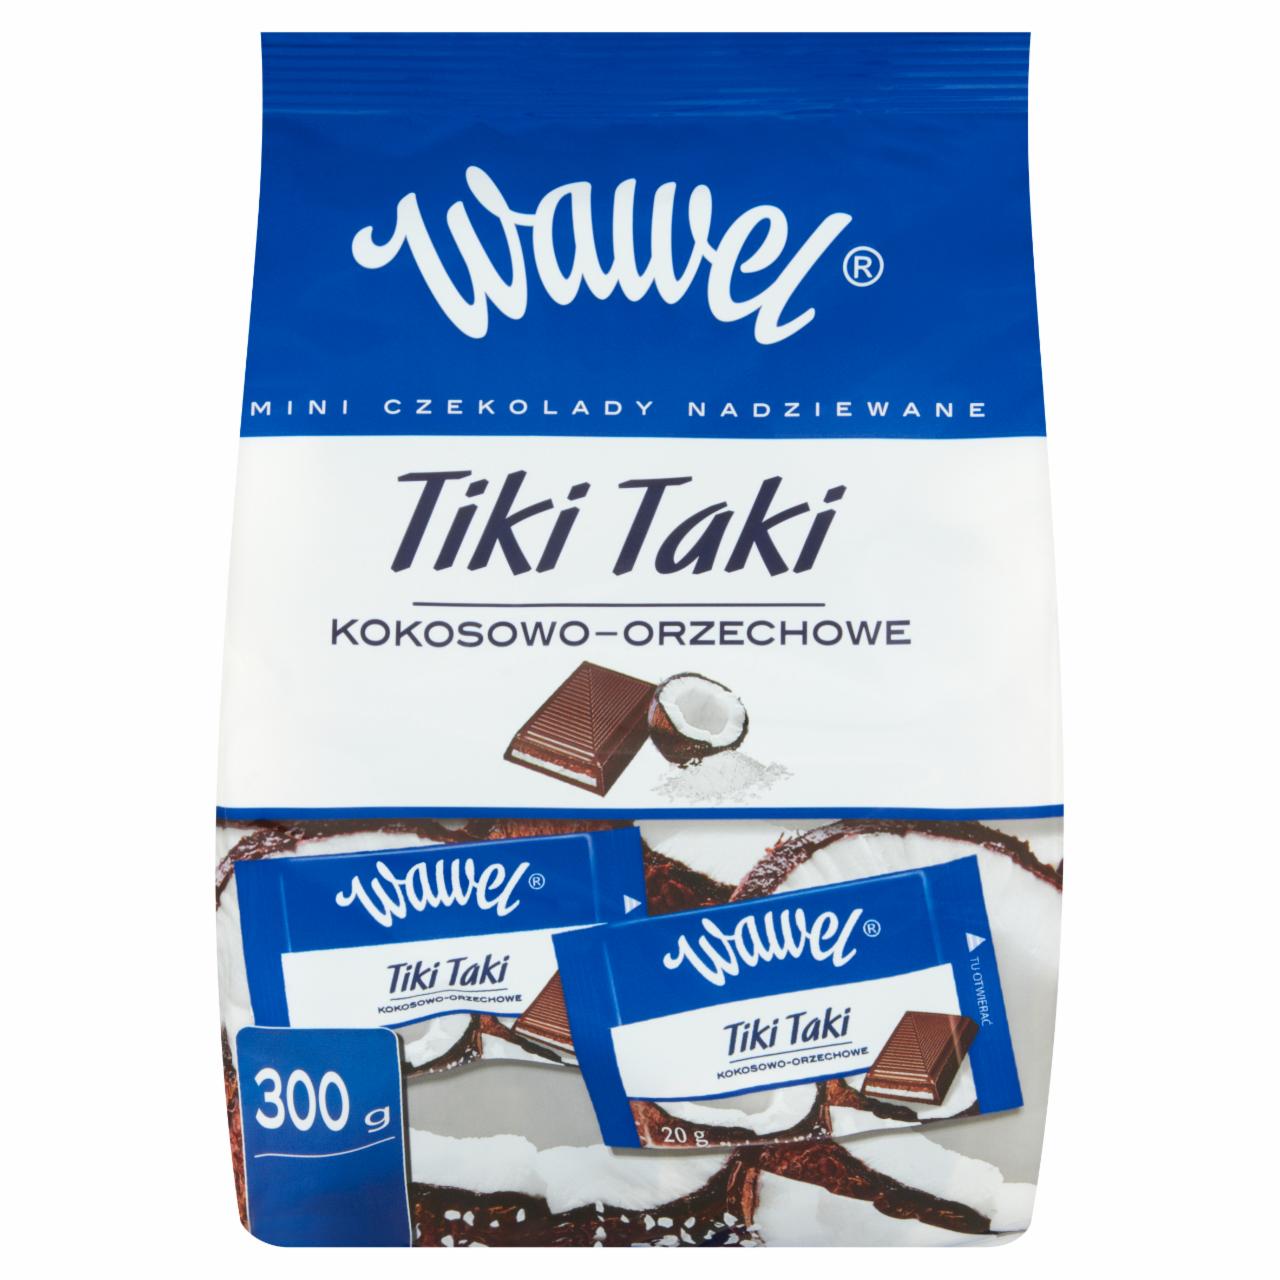 Zdjęcia - Wawel Tiki Taki kokosowo-orzechowe Mini czekolady nadziewane 300 g